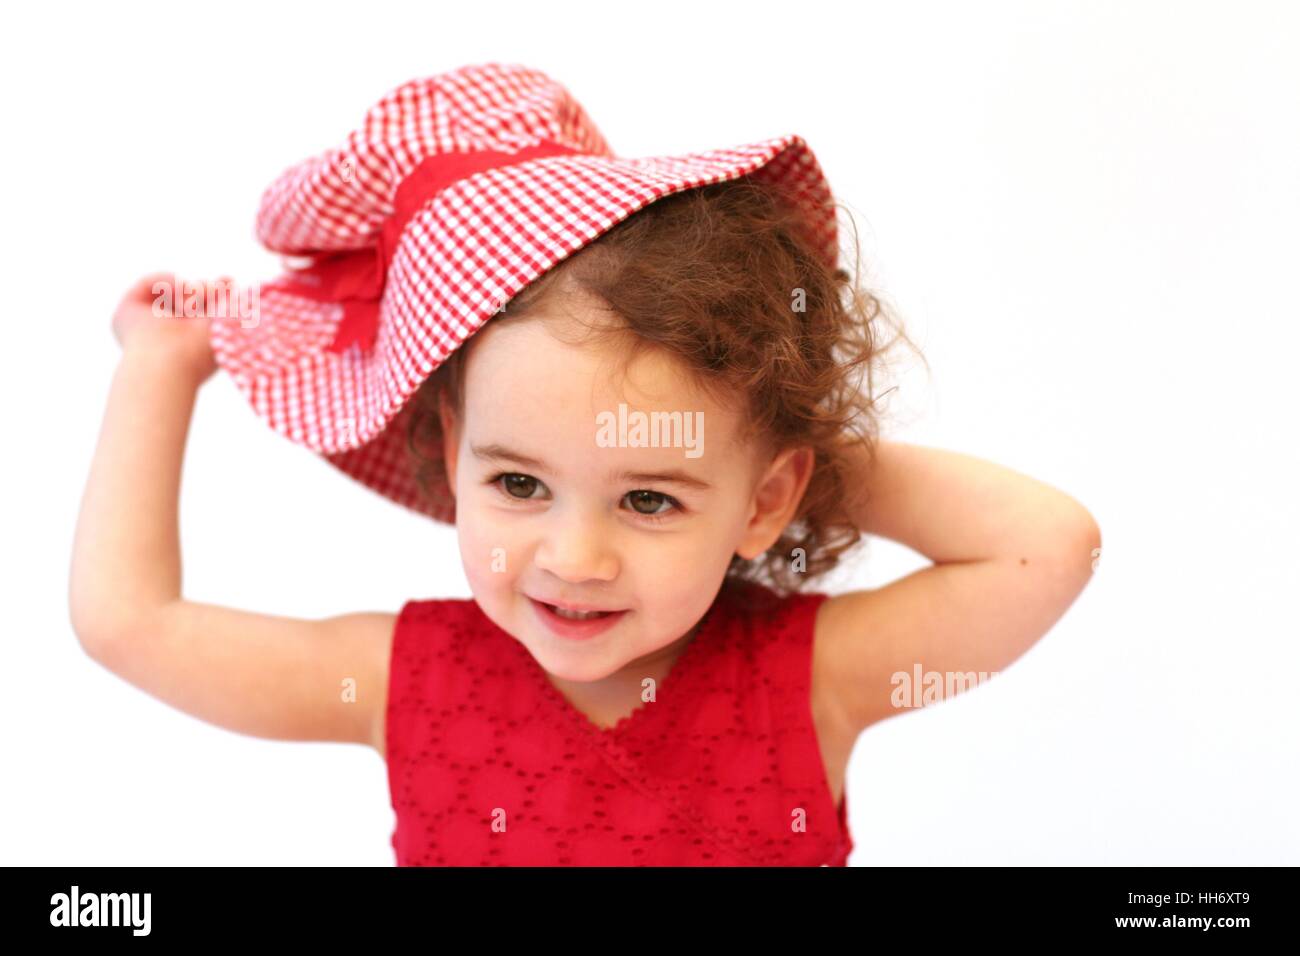 Süße Baby Mädchen Kind Kleinkind mit lockigem Haar spielen mit Rotem gingham Sonnenhut, Kindheit Konzept, unschuldig, Freude, happy Stockfoto